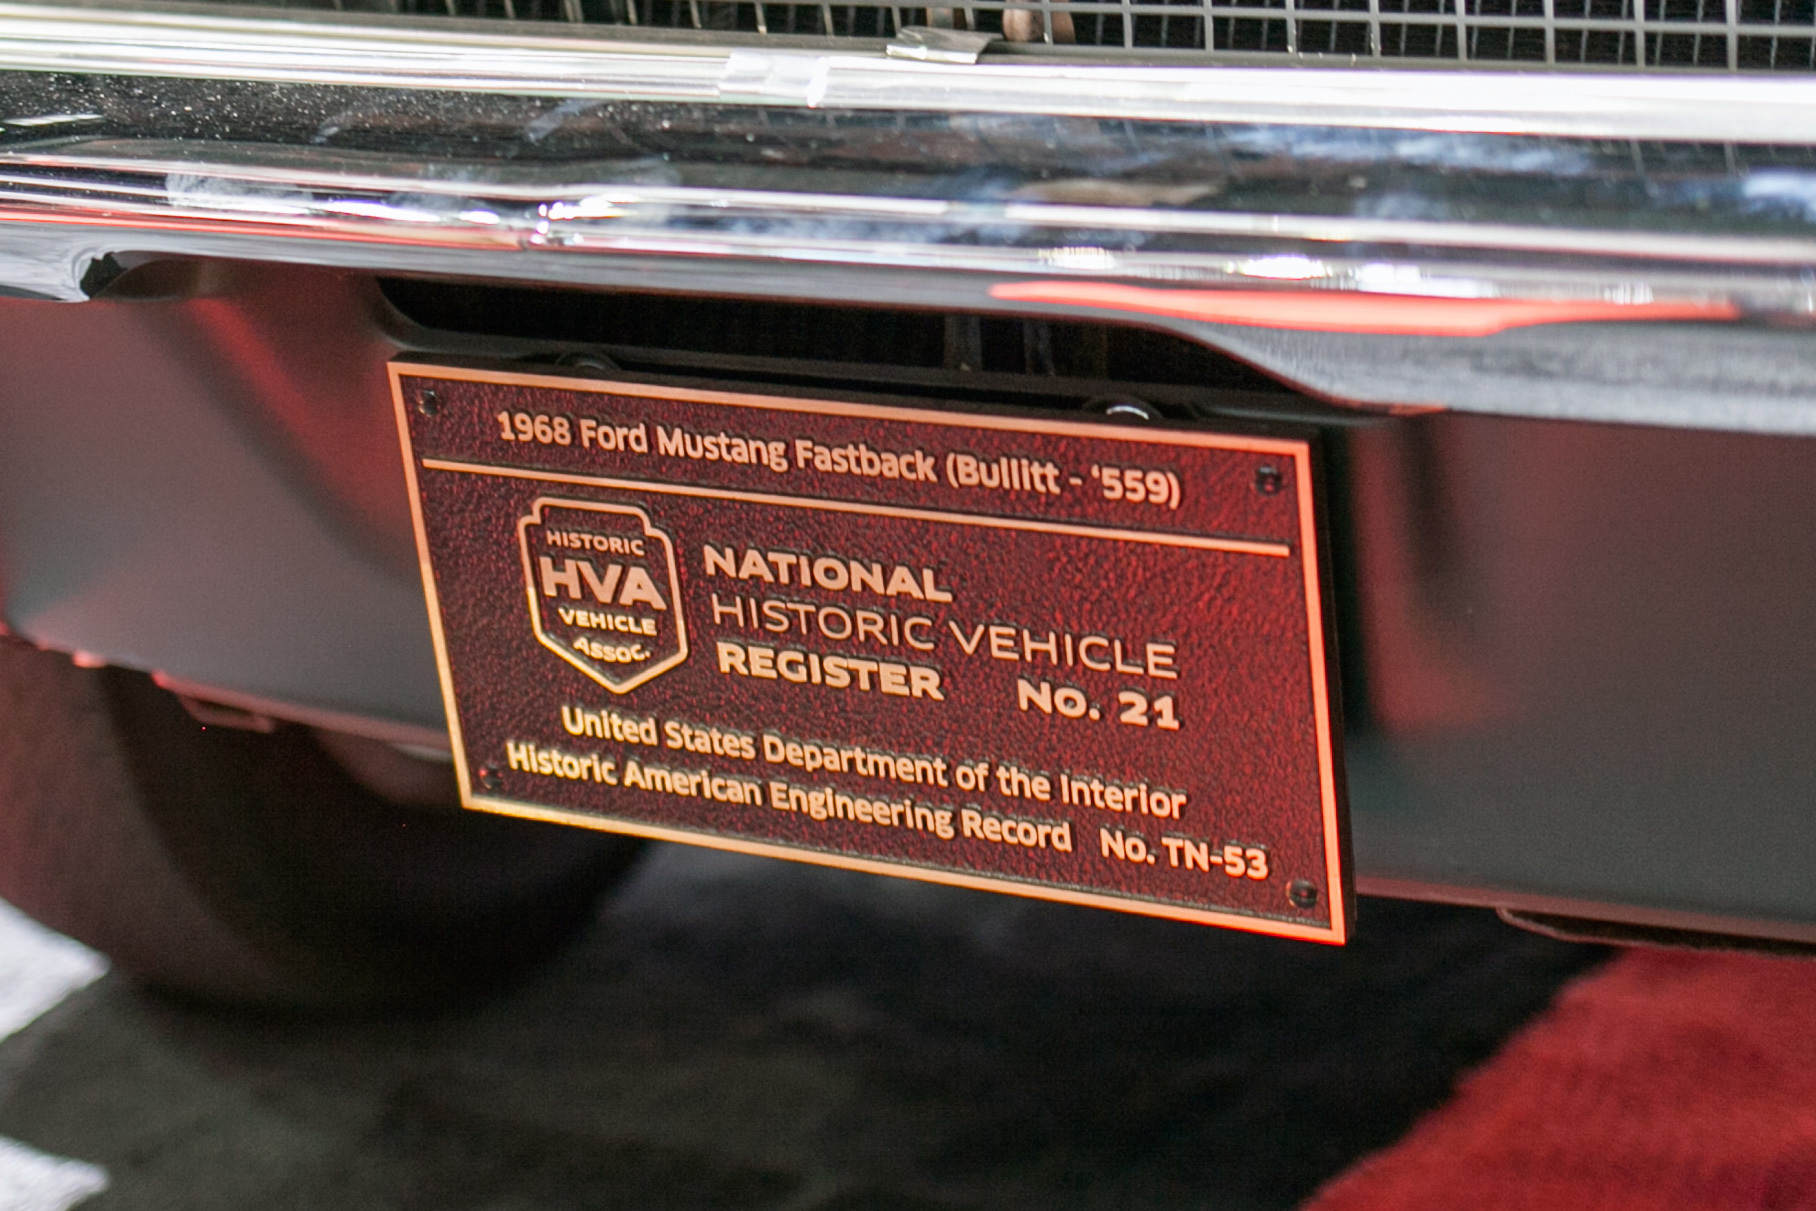 Этот Mustang занесен в Реестр национальных исторических средств транспорта США под номером 21. Что это за реестр, мы рассказывали [здесь](https://motor.ru/stories/us-historic-vehicles.htm)